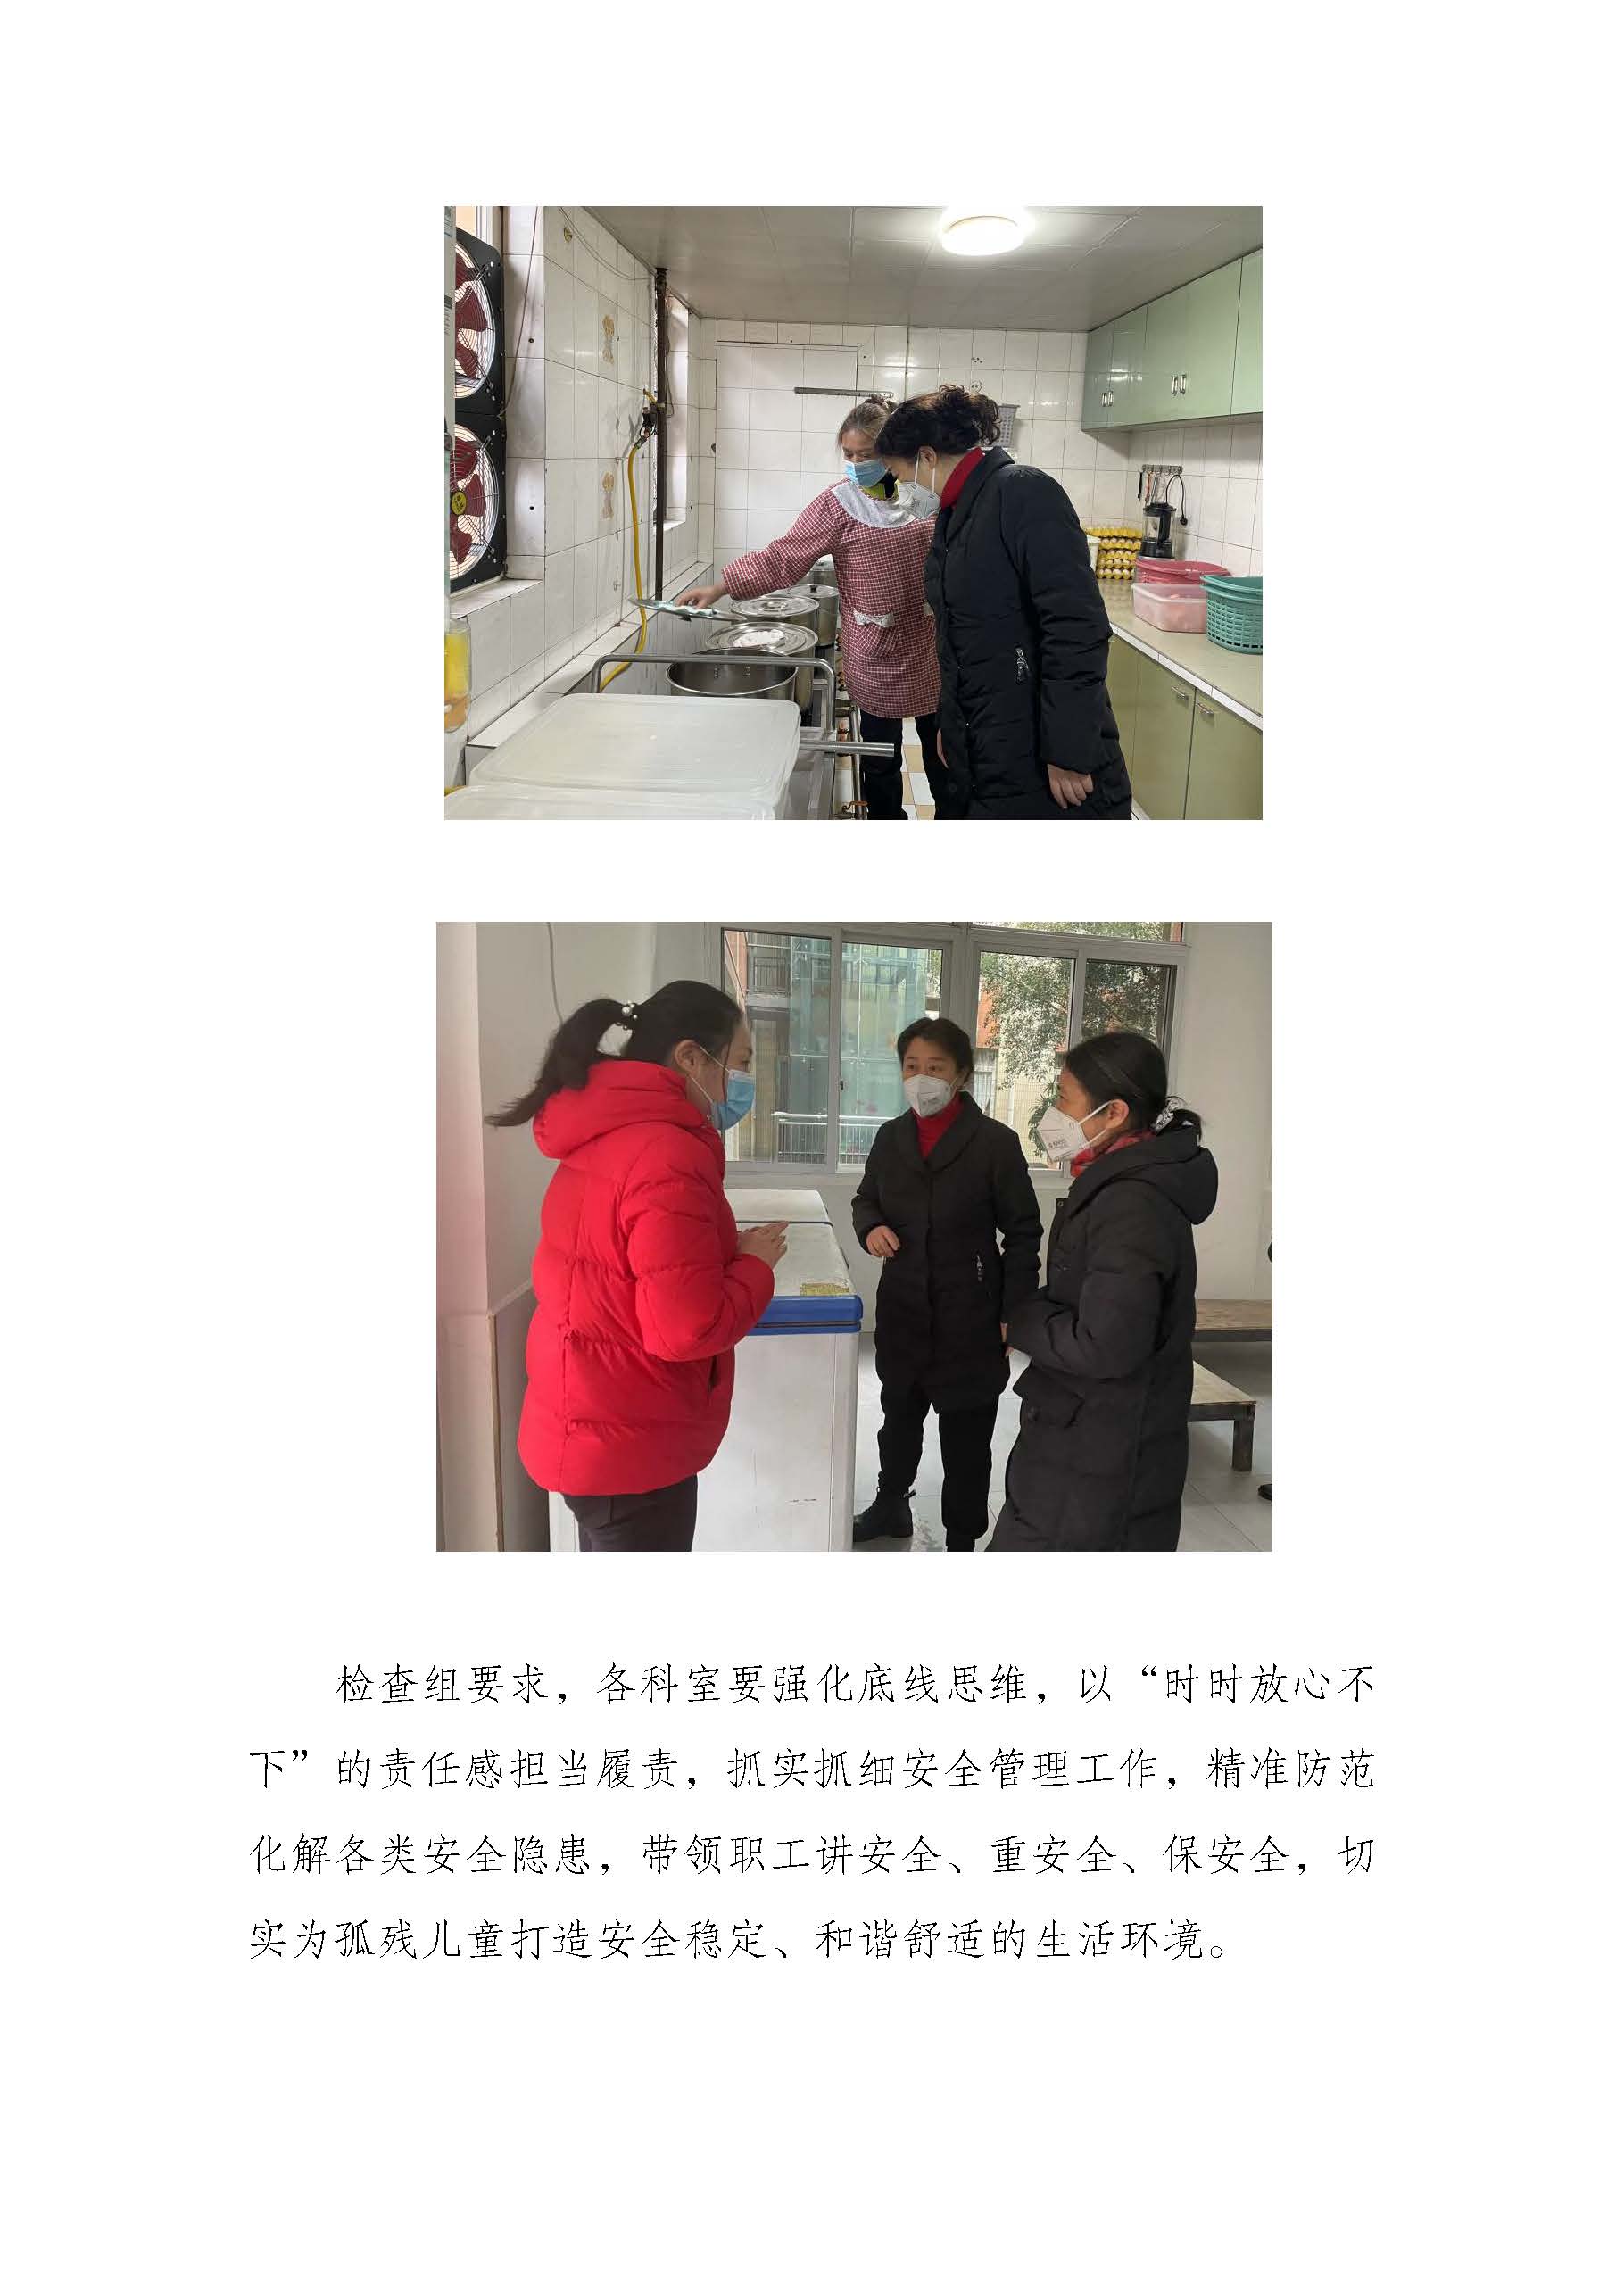 2.15 重庆市儿童福利院开展安全大检查_页面_2.jpg